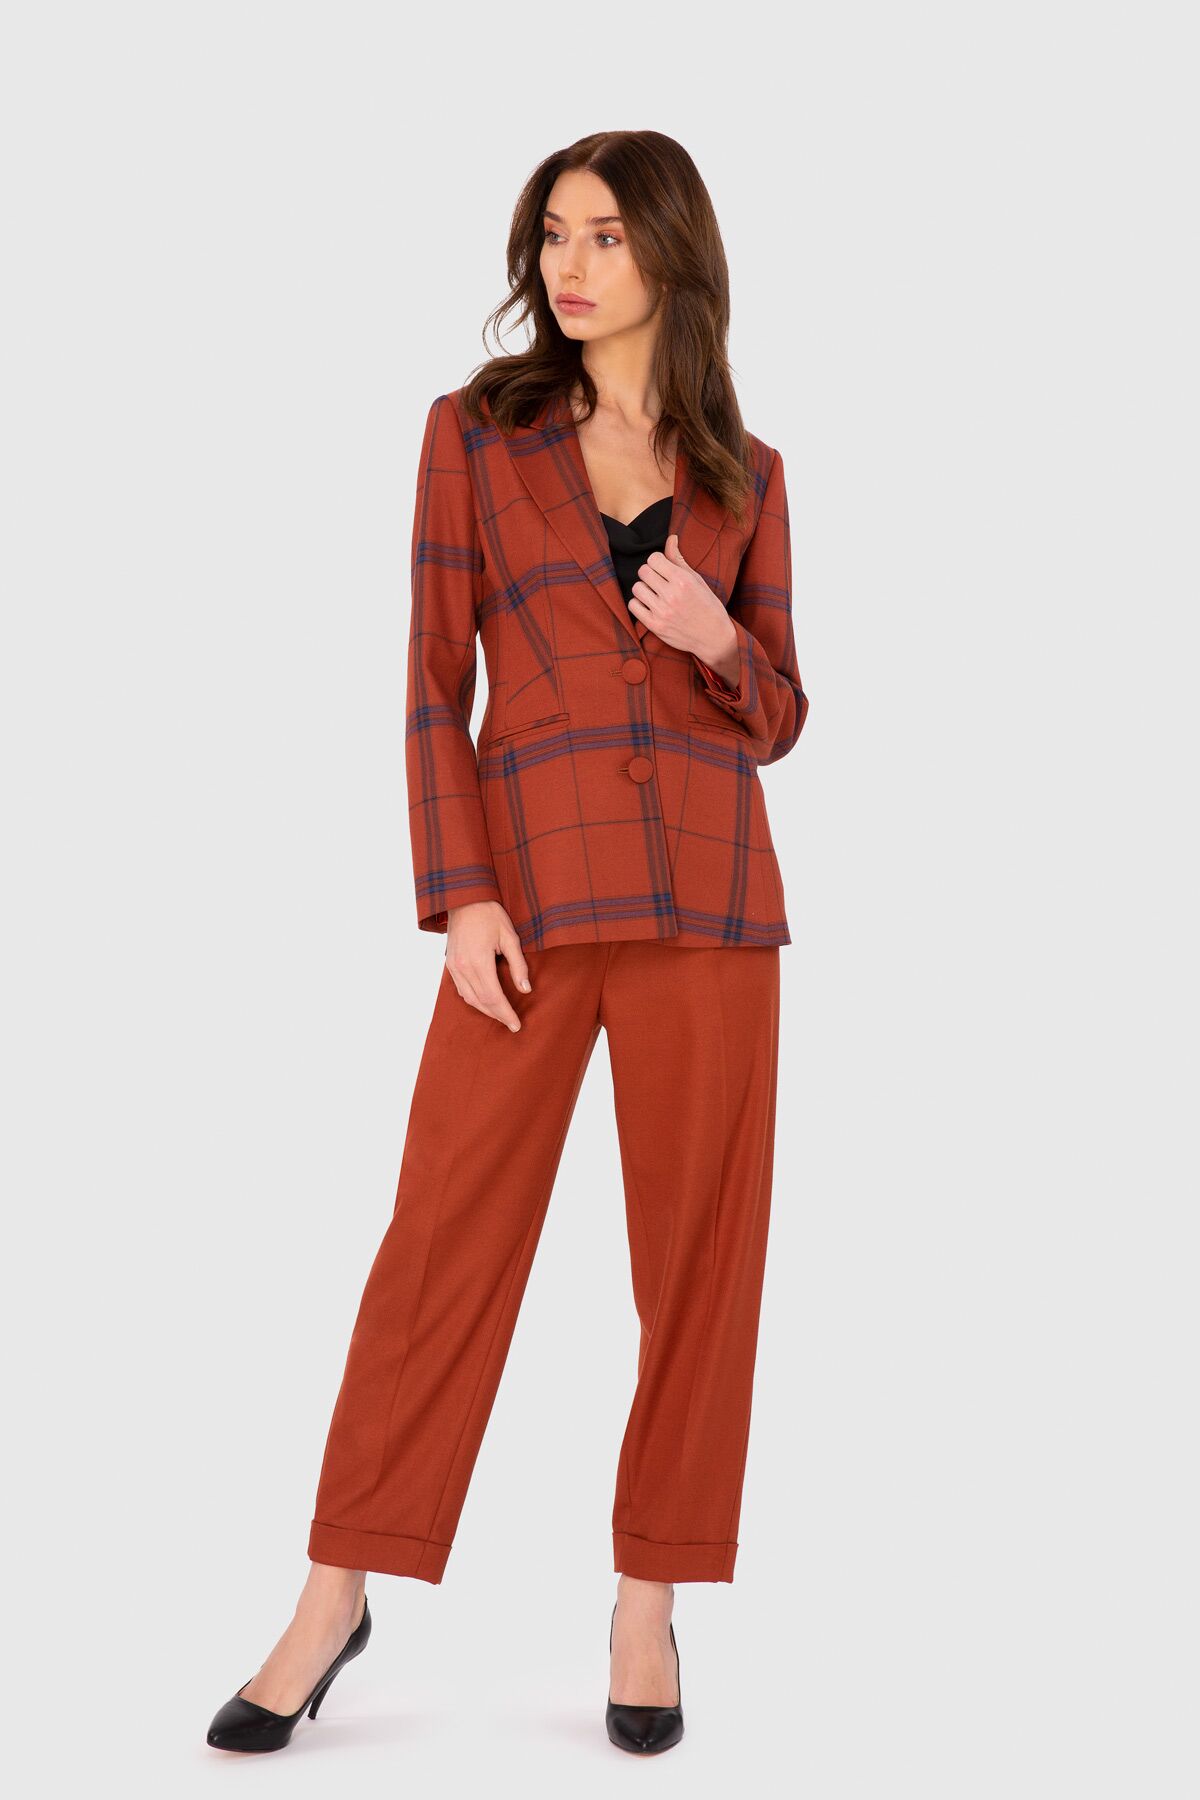 4G CLASSIC - Ekose Fit Ceketli Düz Havuç Pantalonlu Takım Elbise